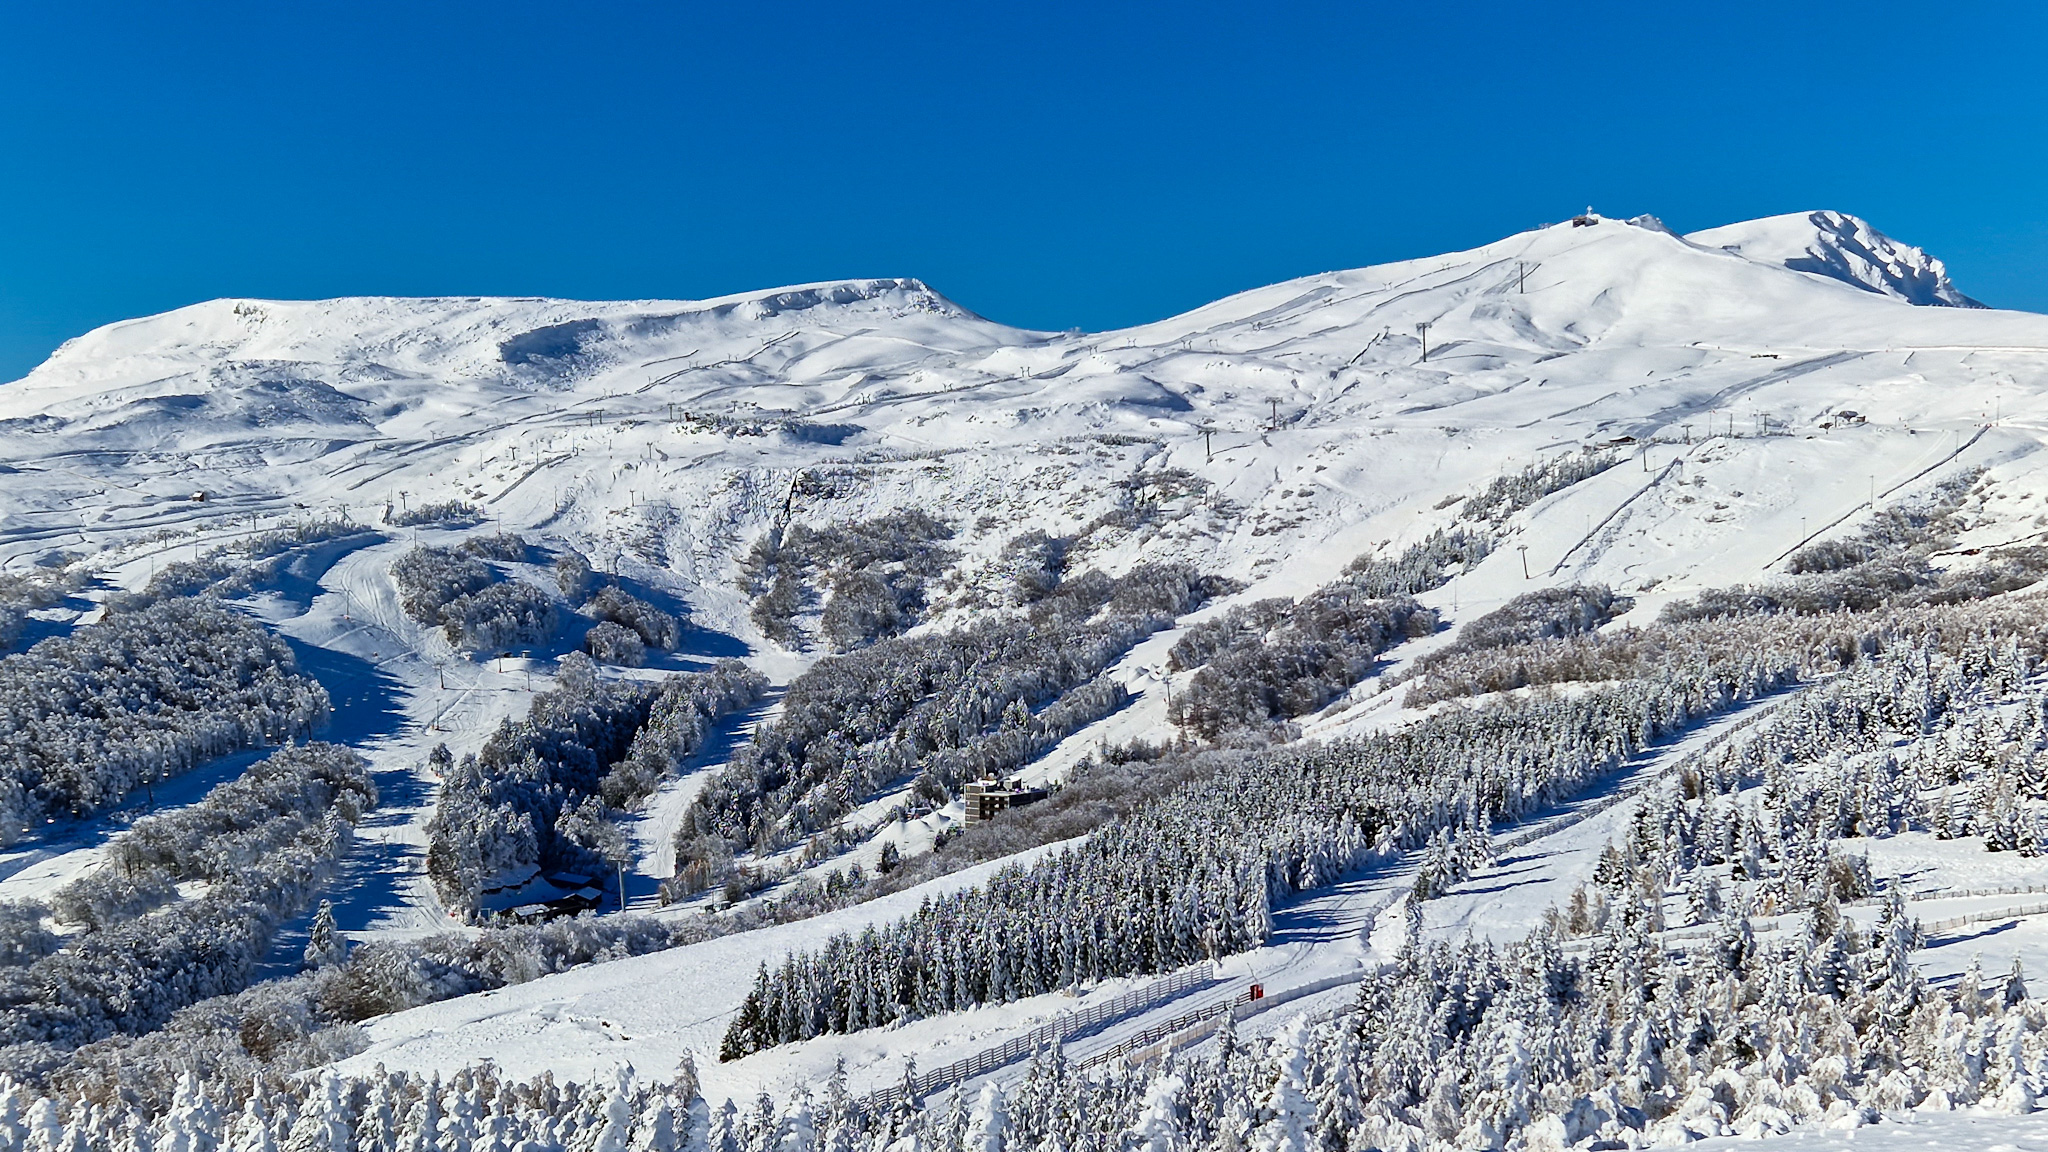 Domaine Skiable de la station de ski de Super Besse